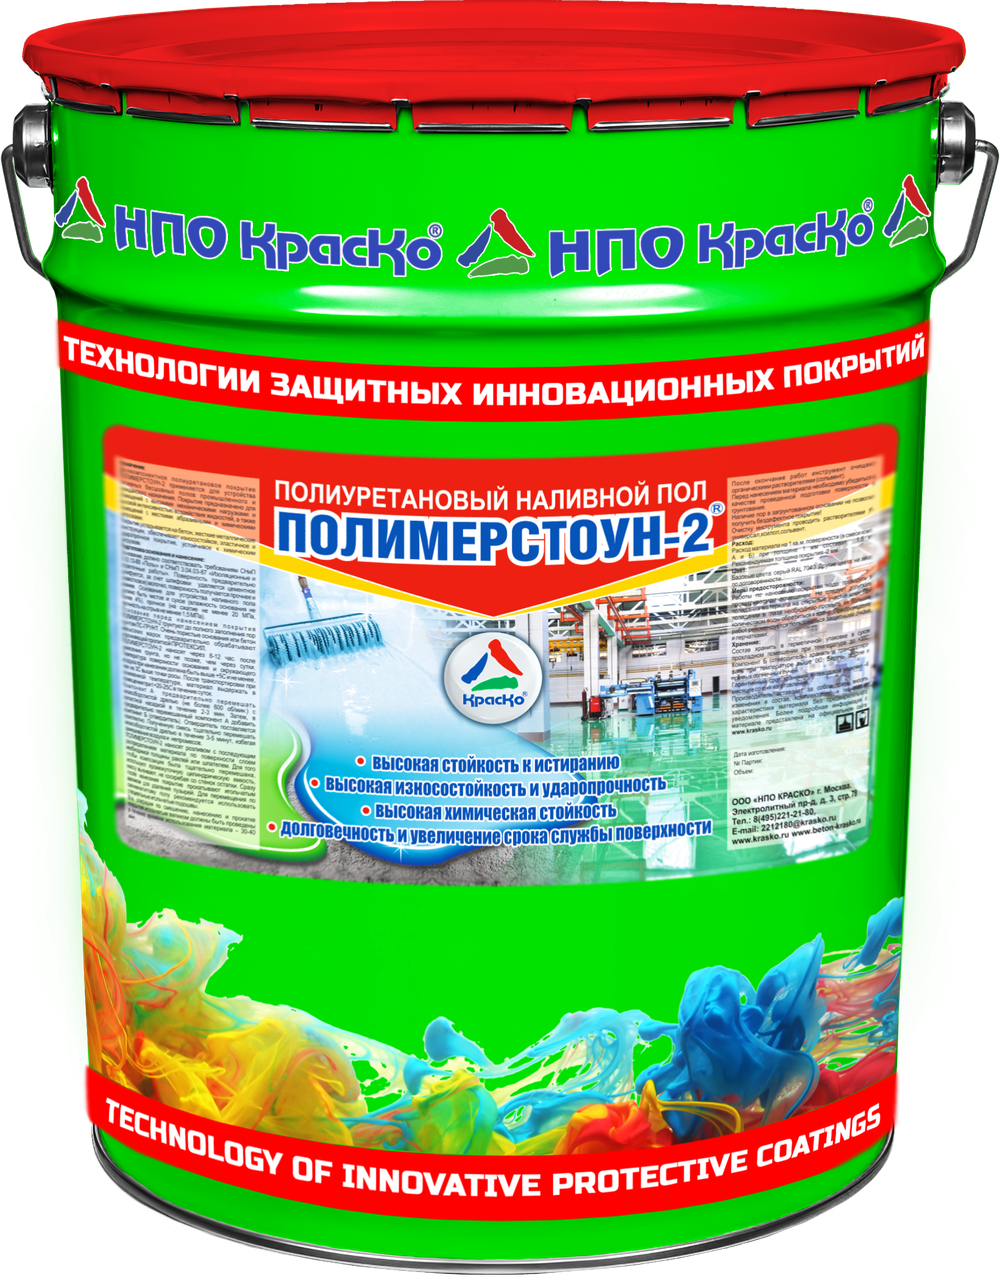 ПОЛИМЕРСТОУН-2 (Краско) – износостойкий полиуретановый наливной пол для бетона и бетонных полов